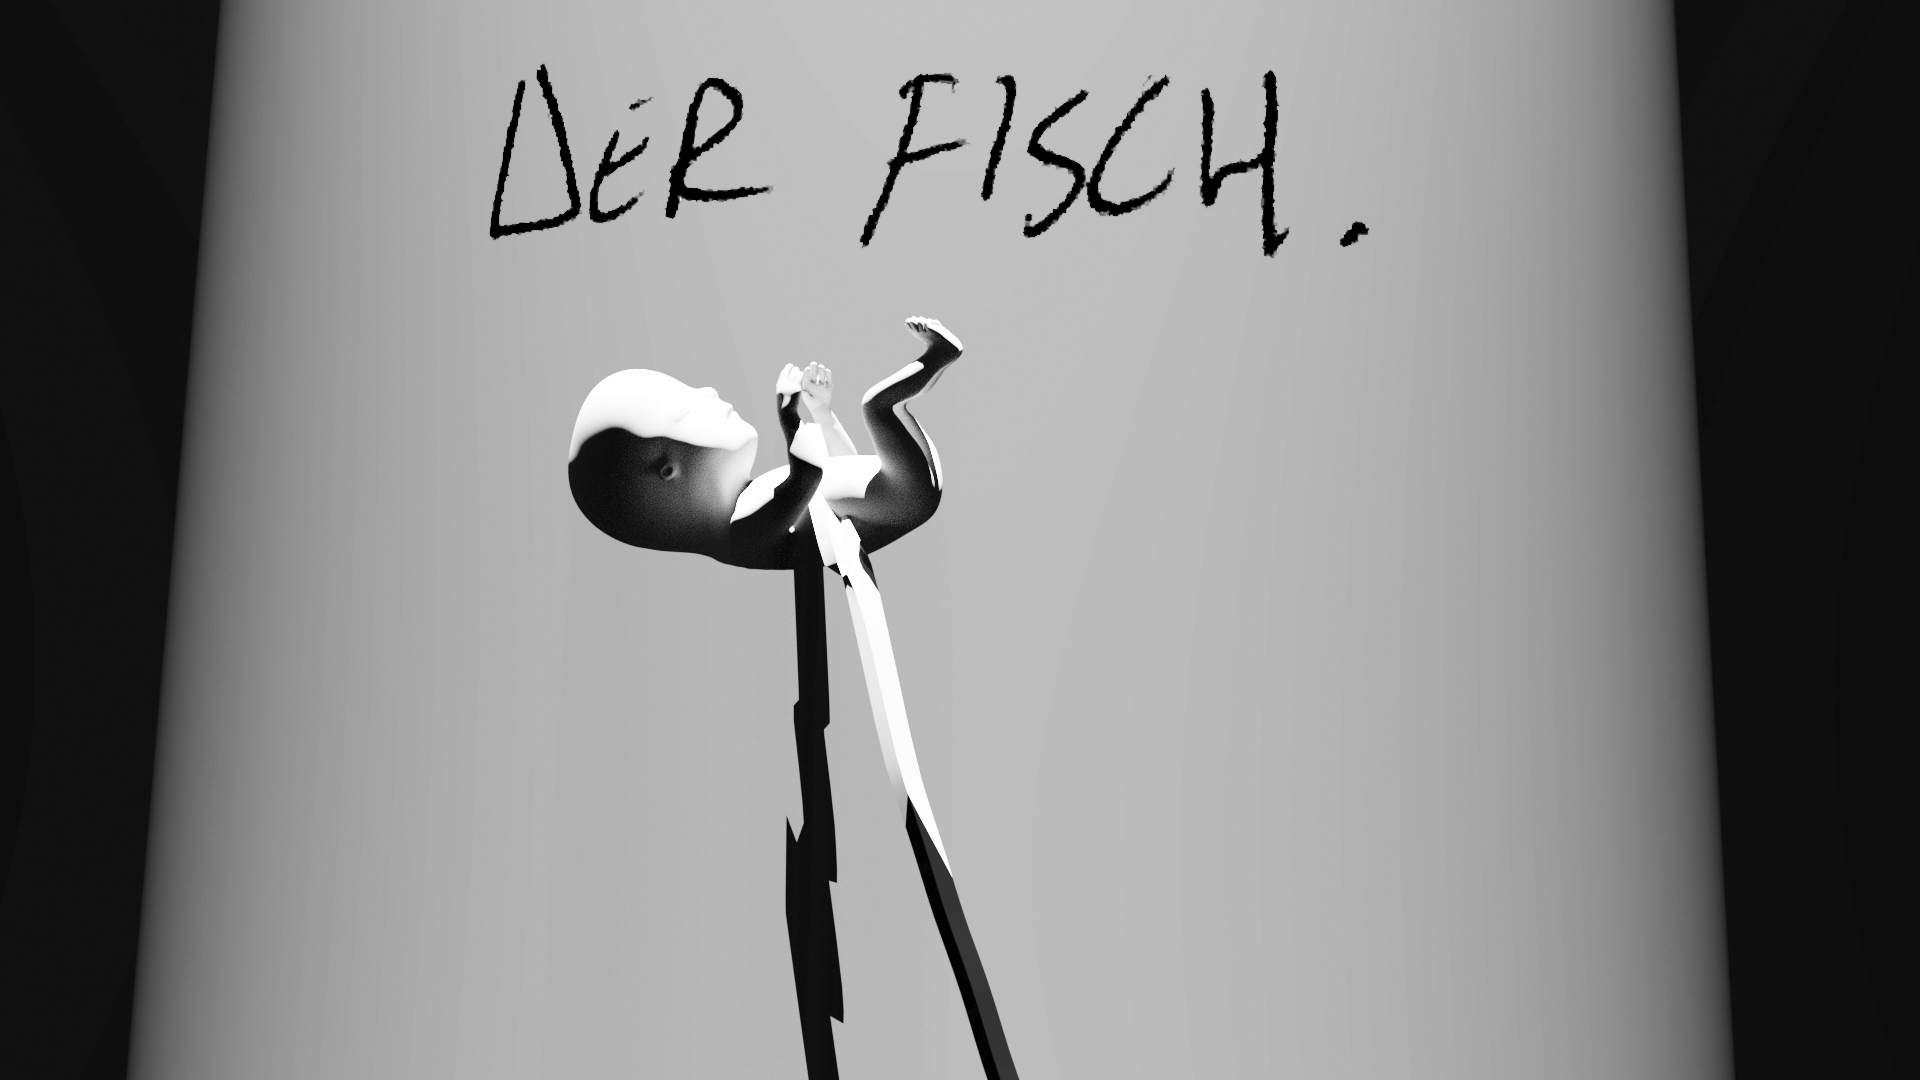 3d render of baby on stilts with words "der fisch"